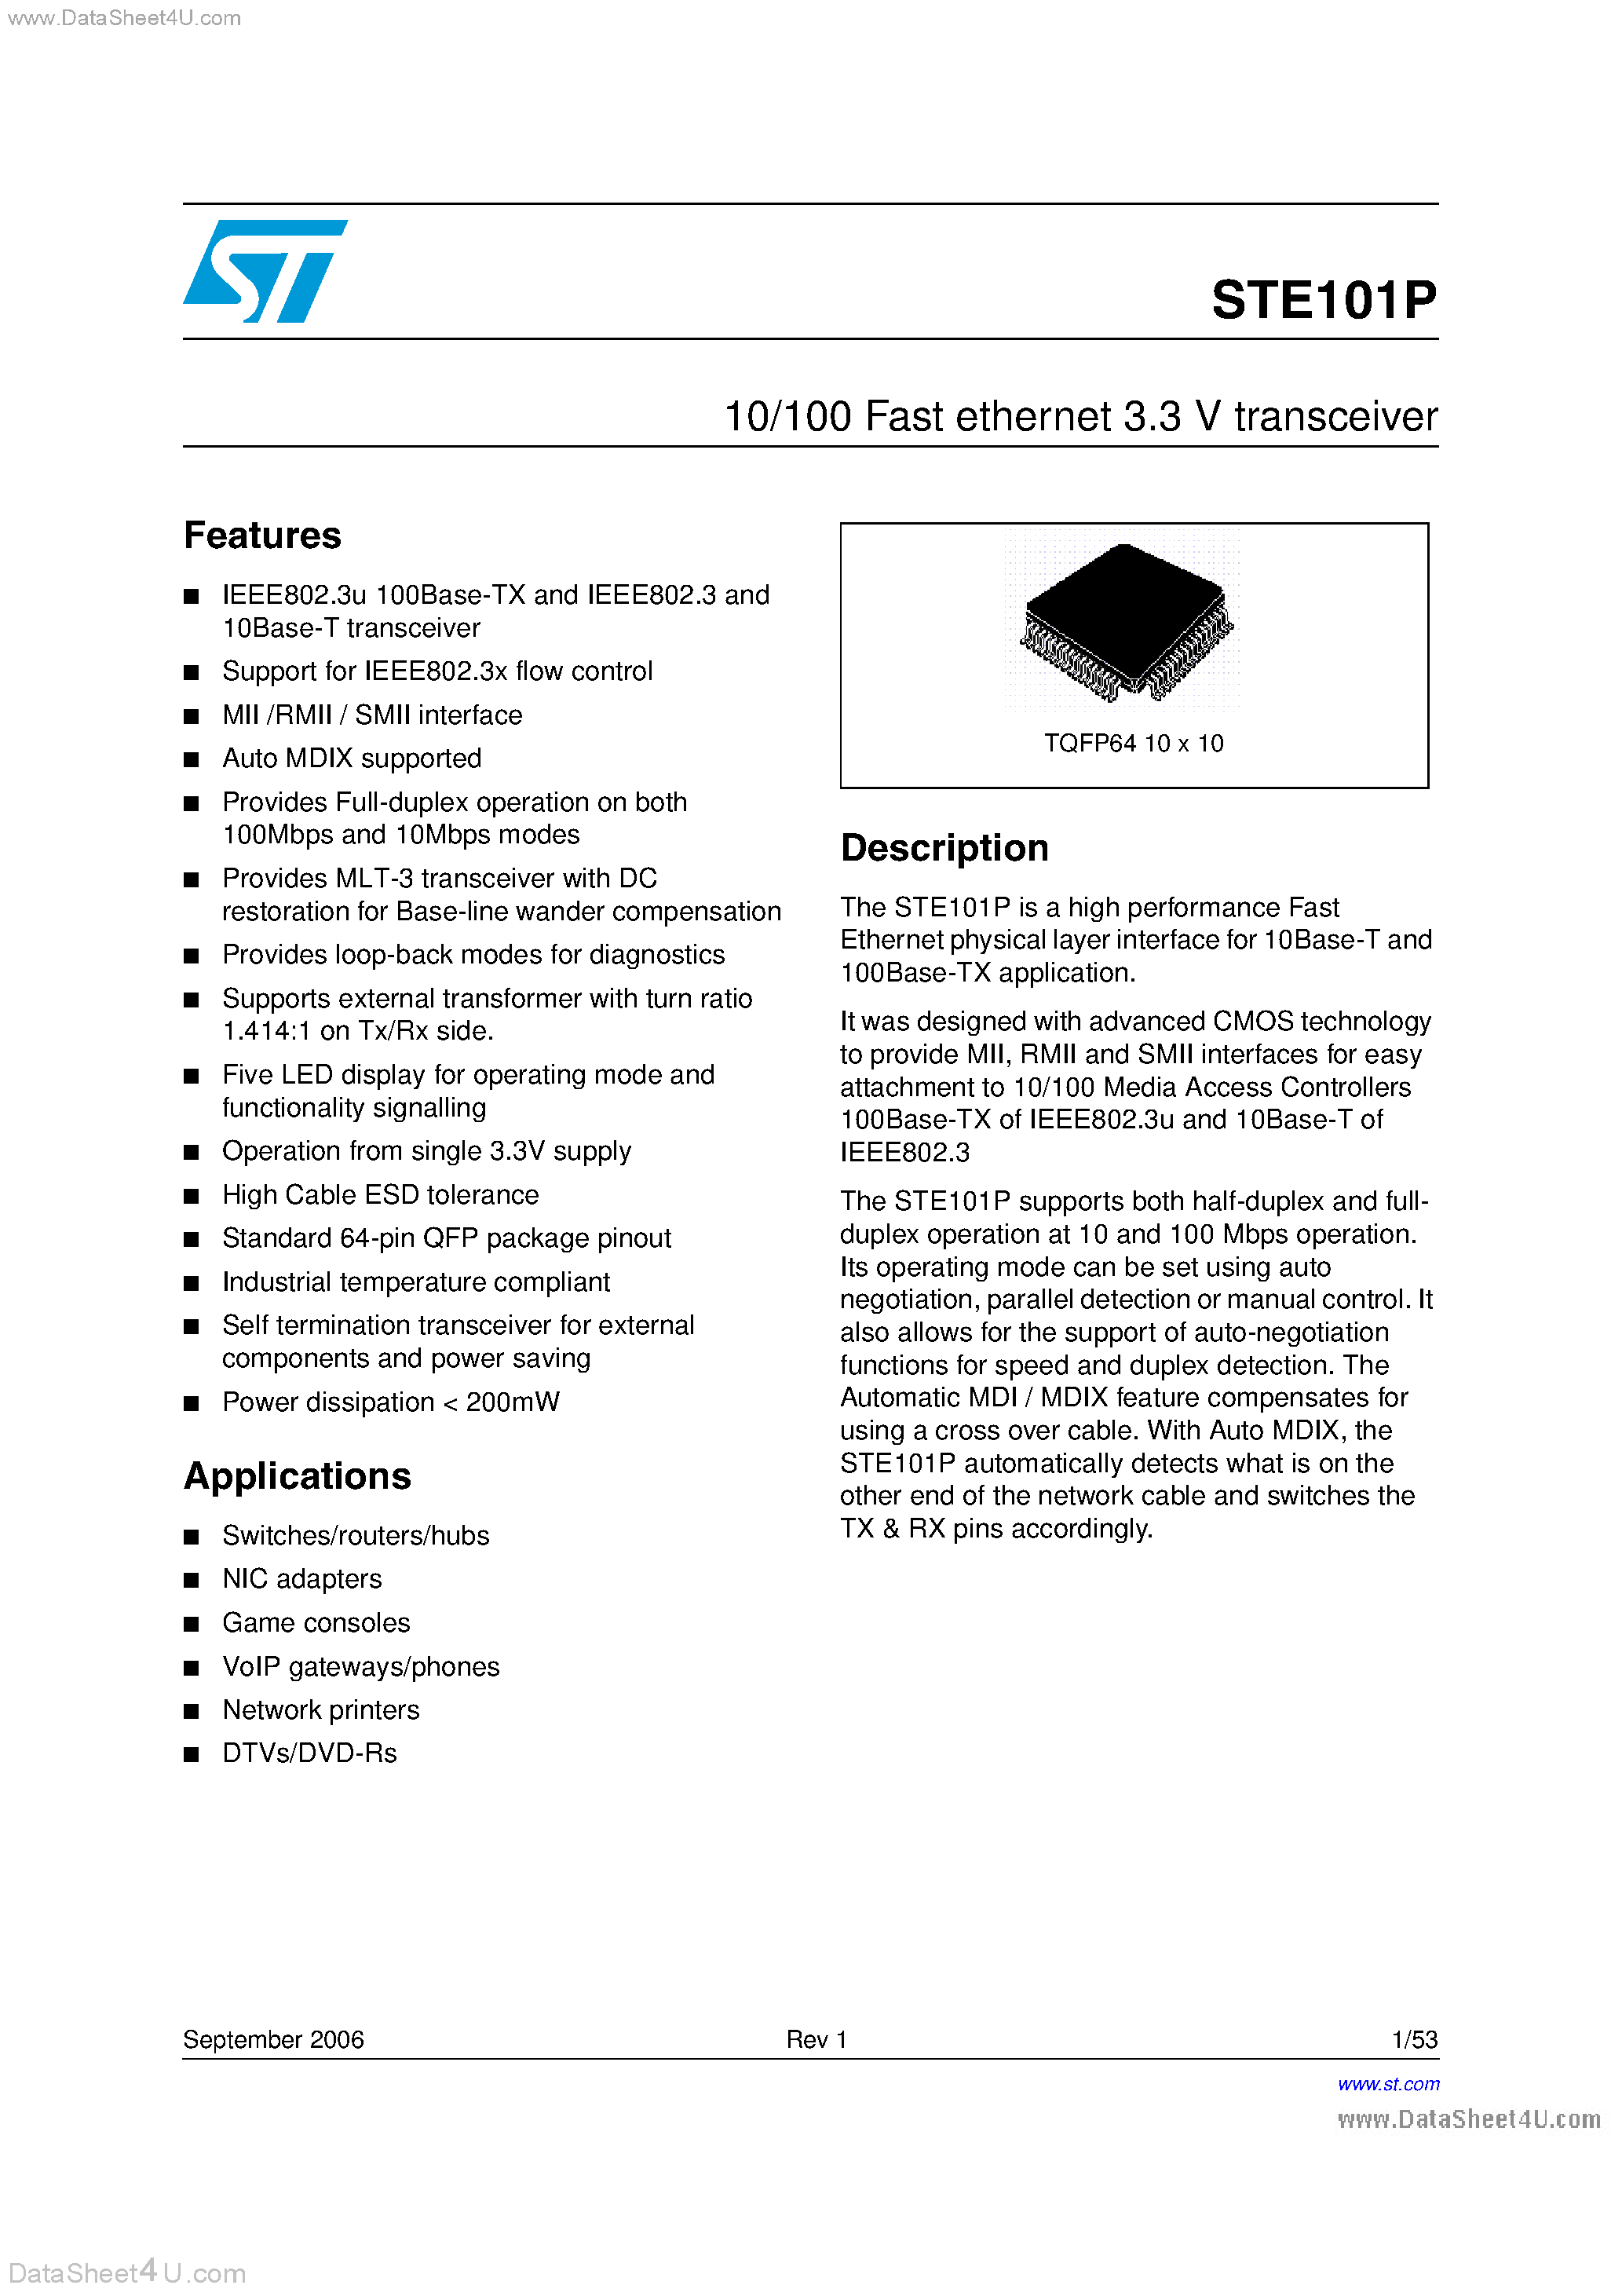 Datasheet STE101P - 10/100 Fast Ethernet 3.3V Transceiver page 1